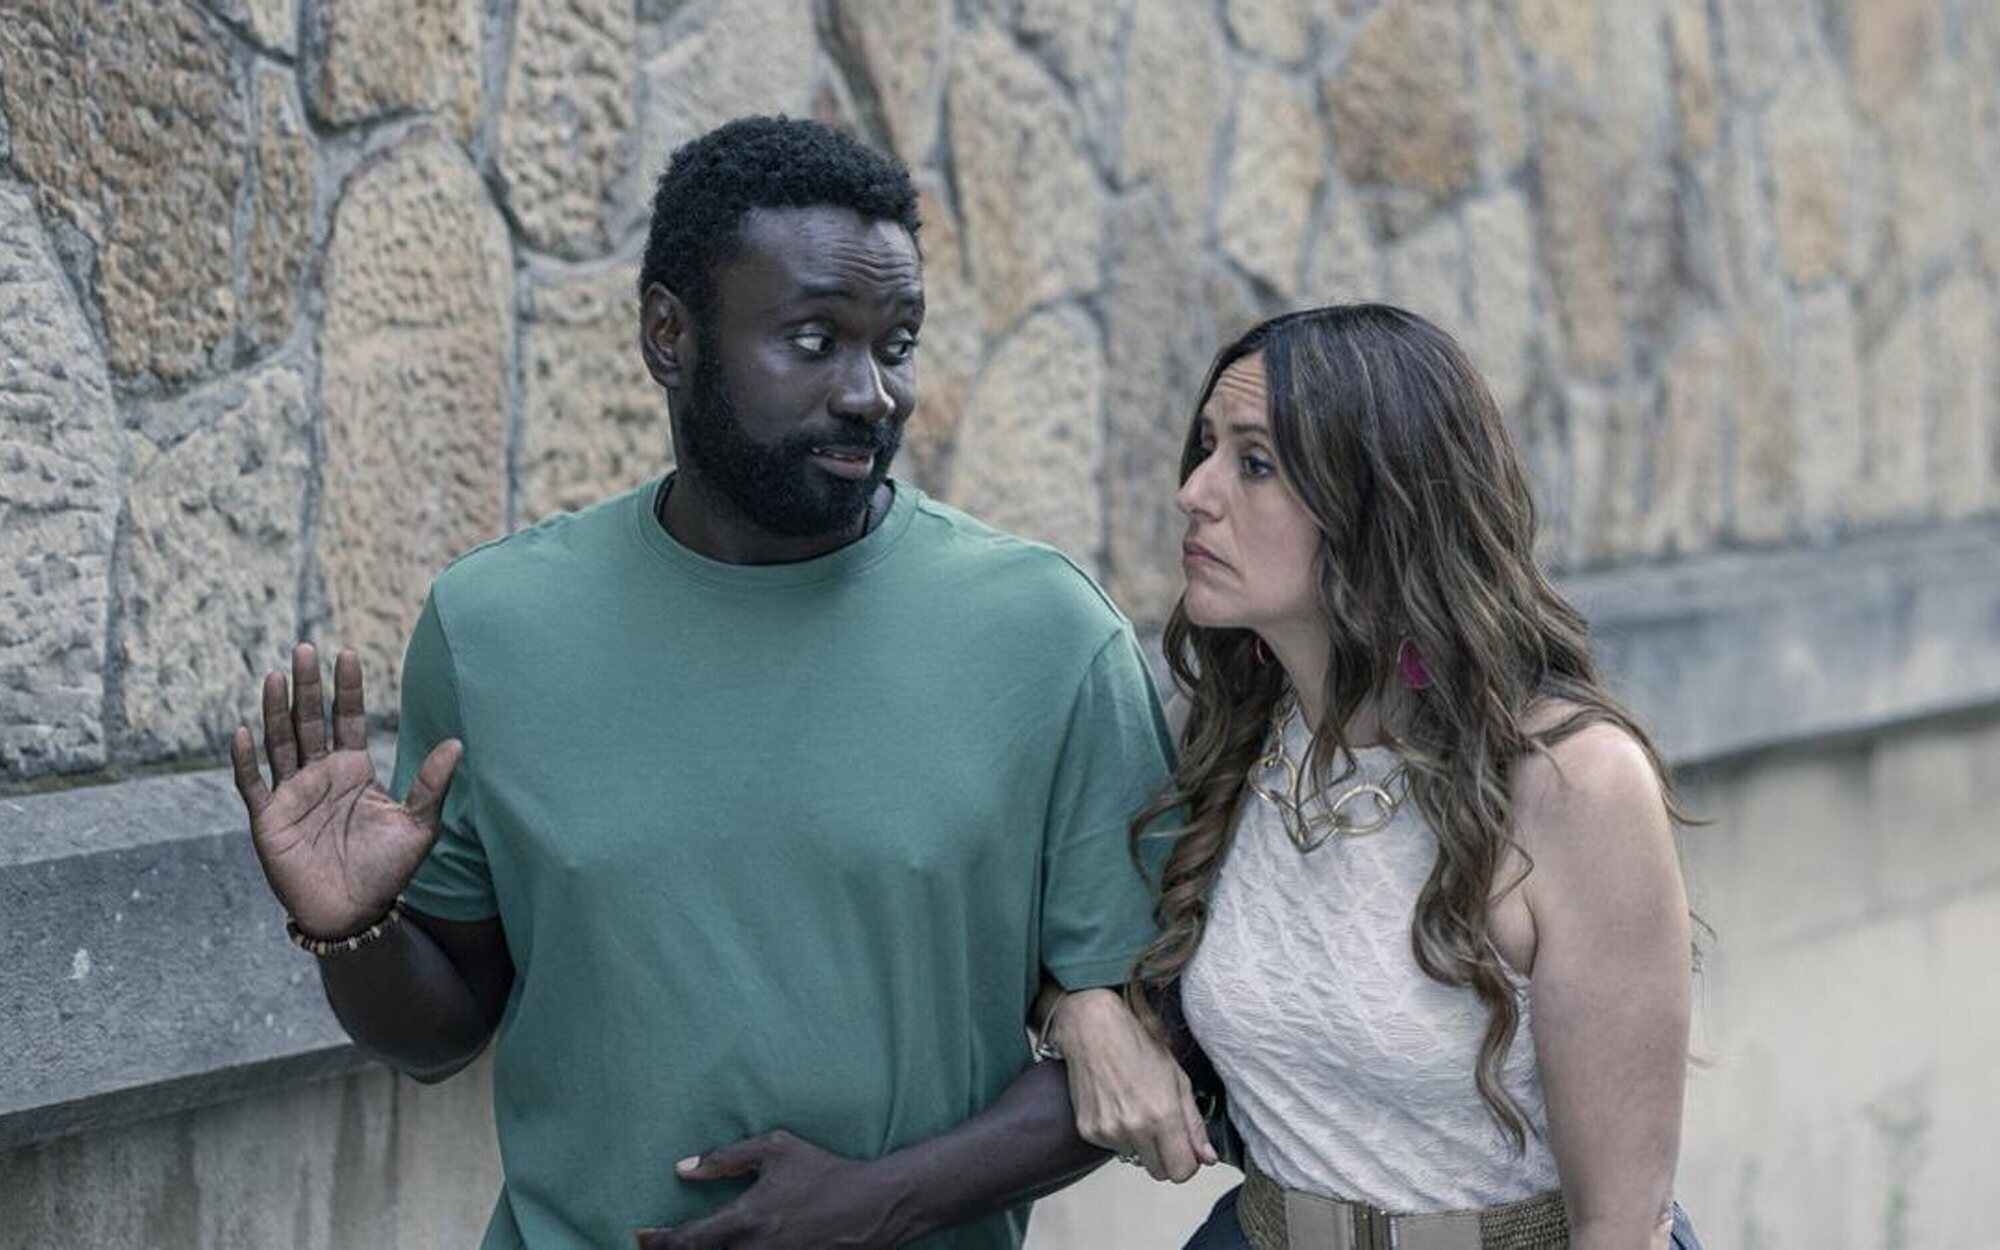 'Detective Touré' saltará a Netflix tras su emisión en La 1 en un nuevo trato con RTVE 